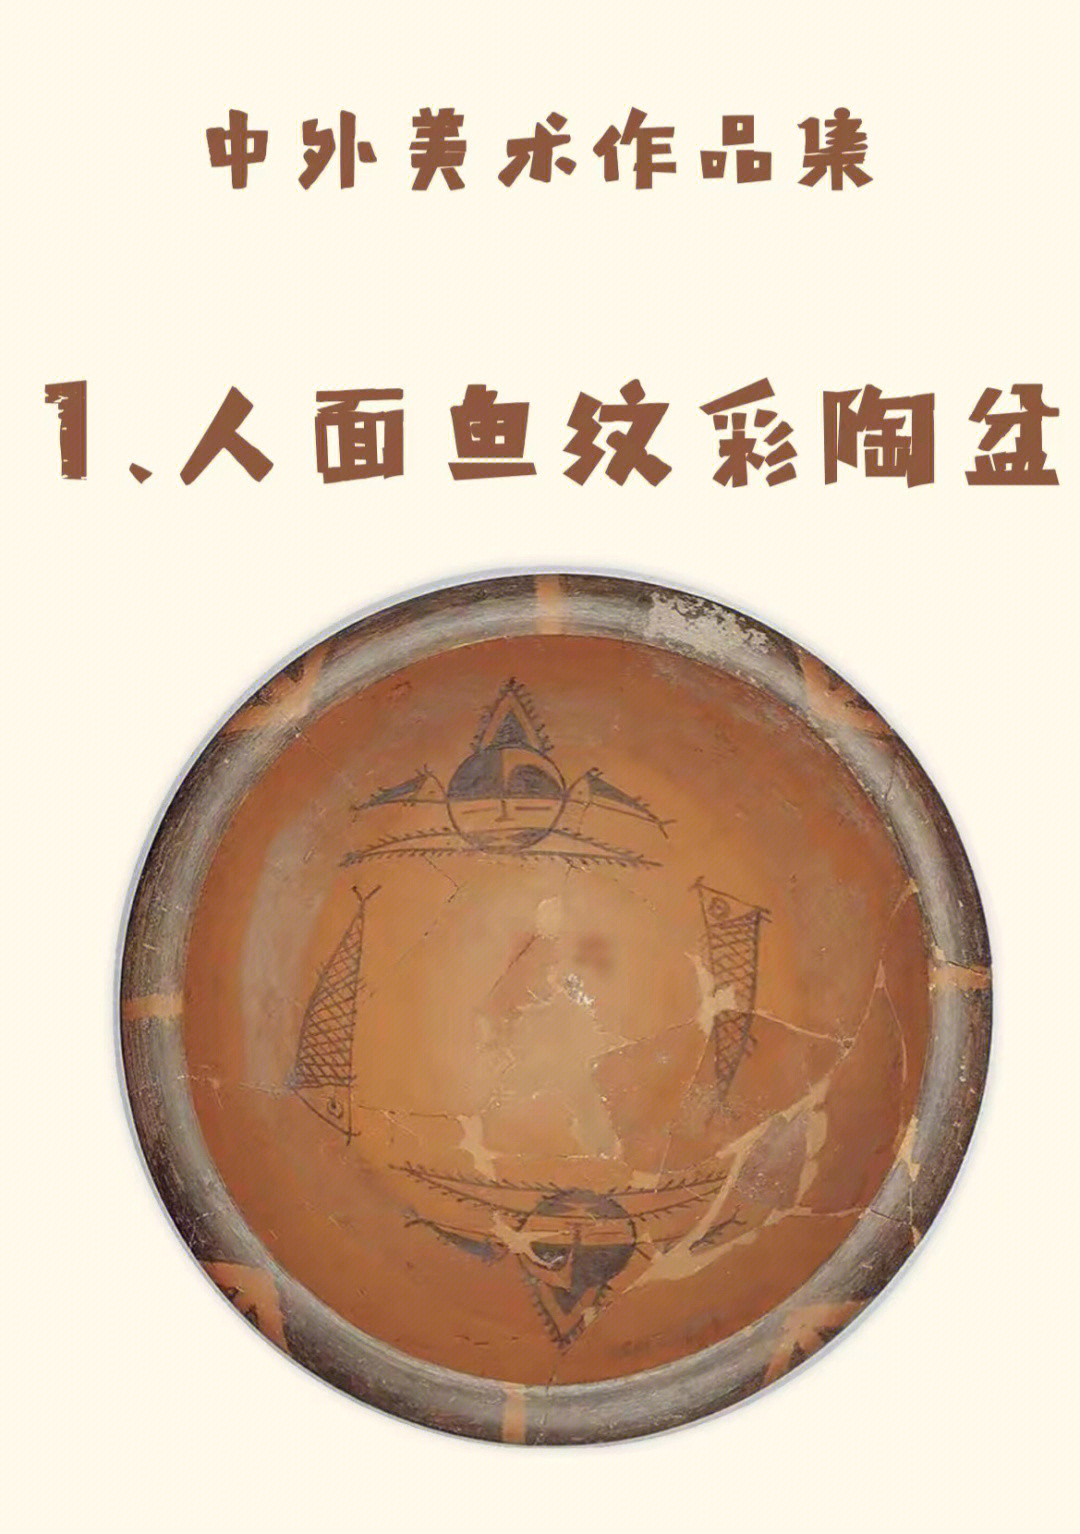 人面鱼纹彩陶盆出土于图片